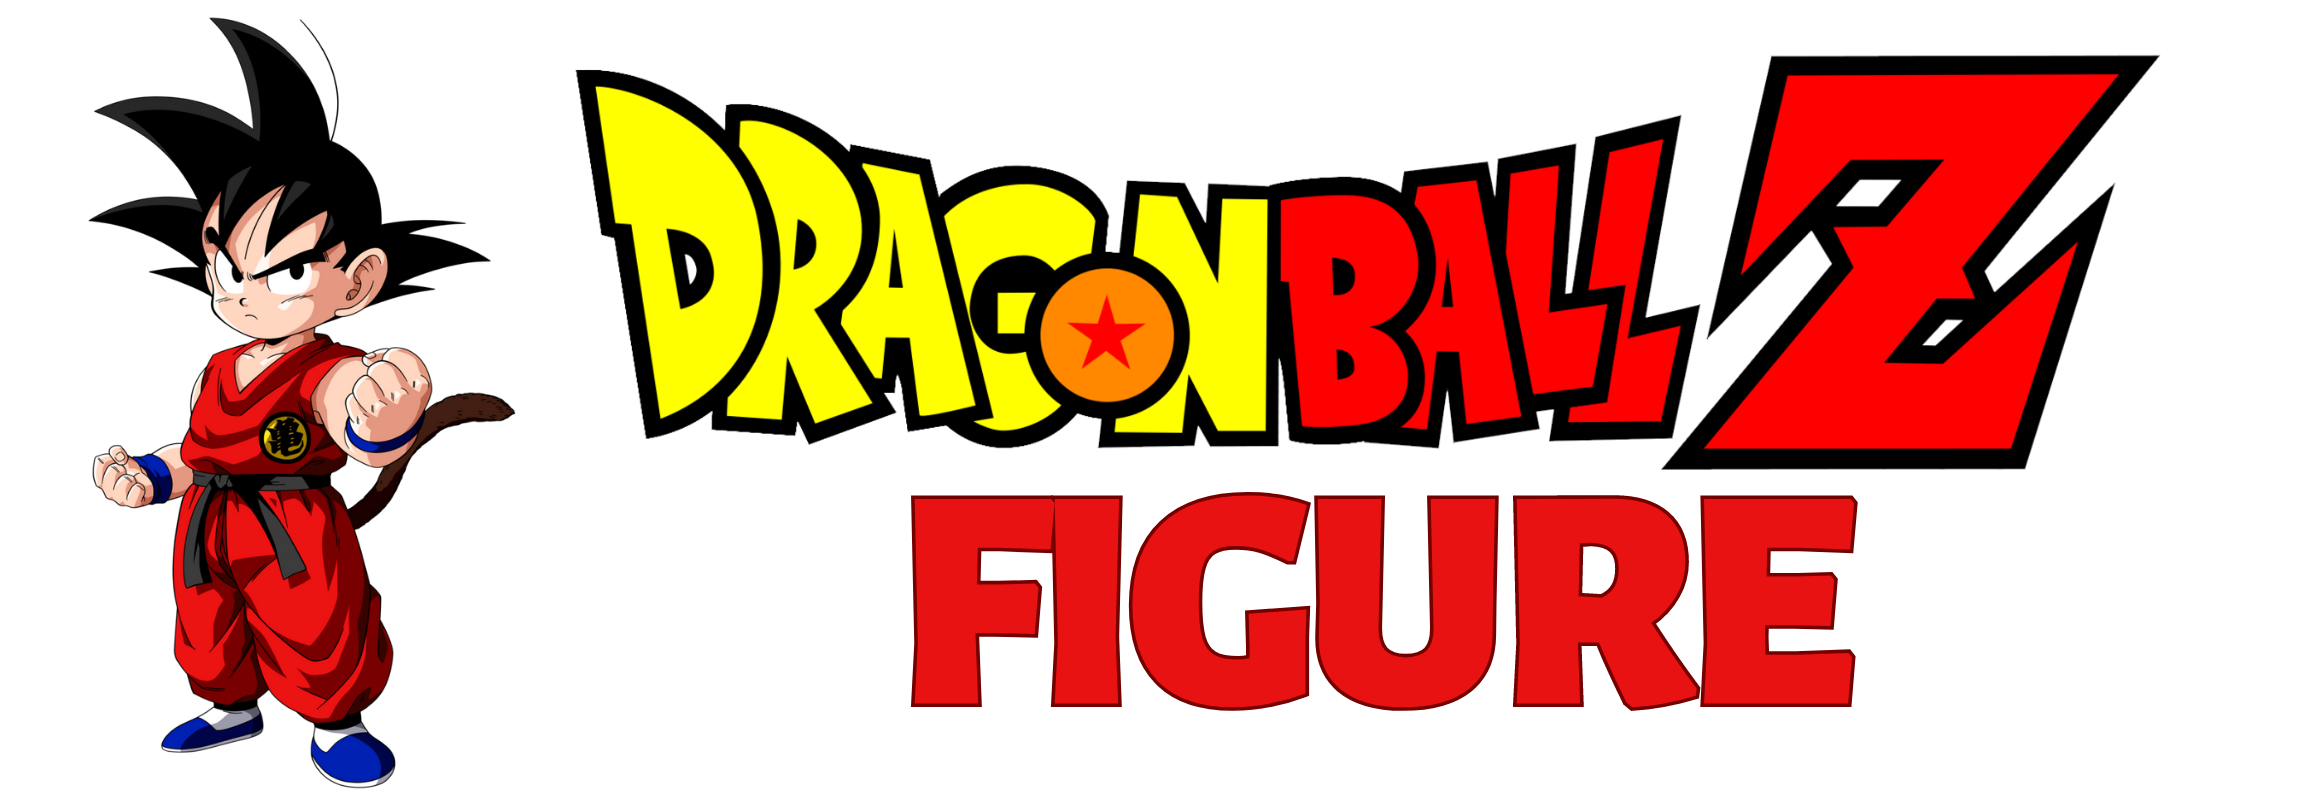 dragon ball figure1 - Dragon Ball Figure